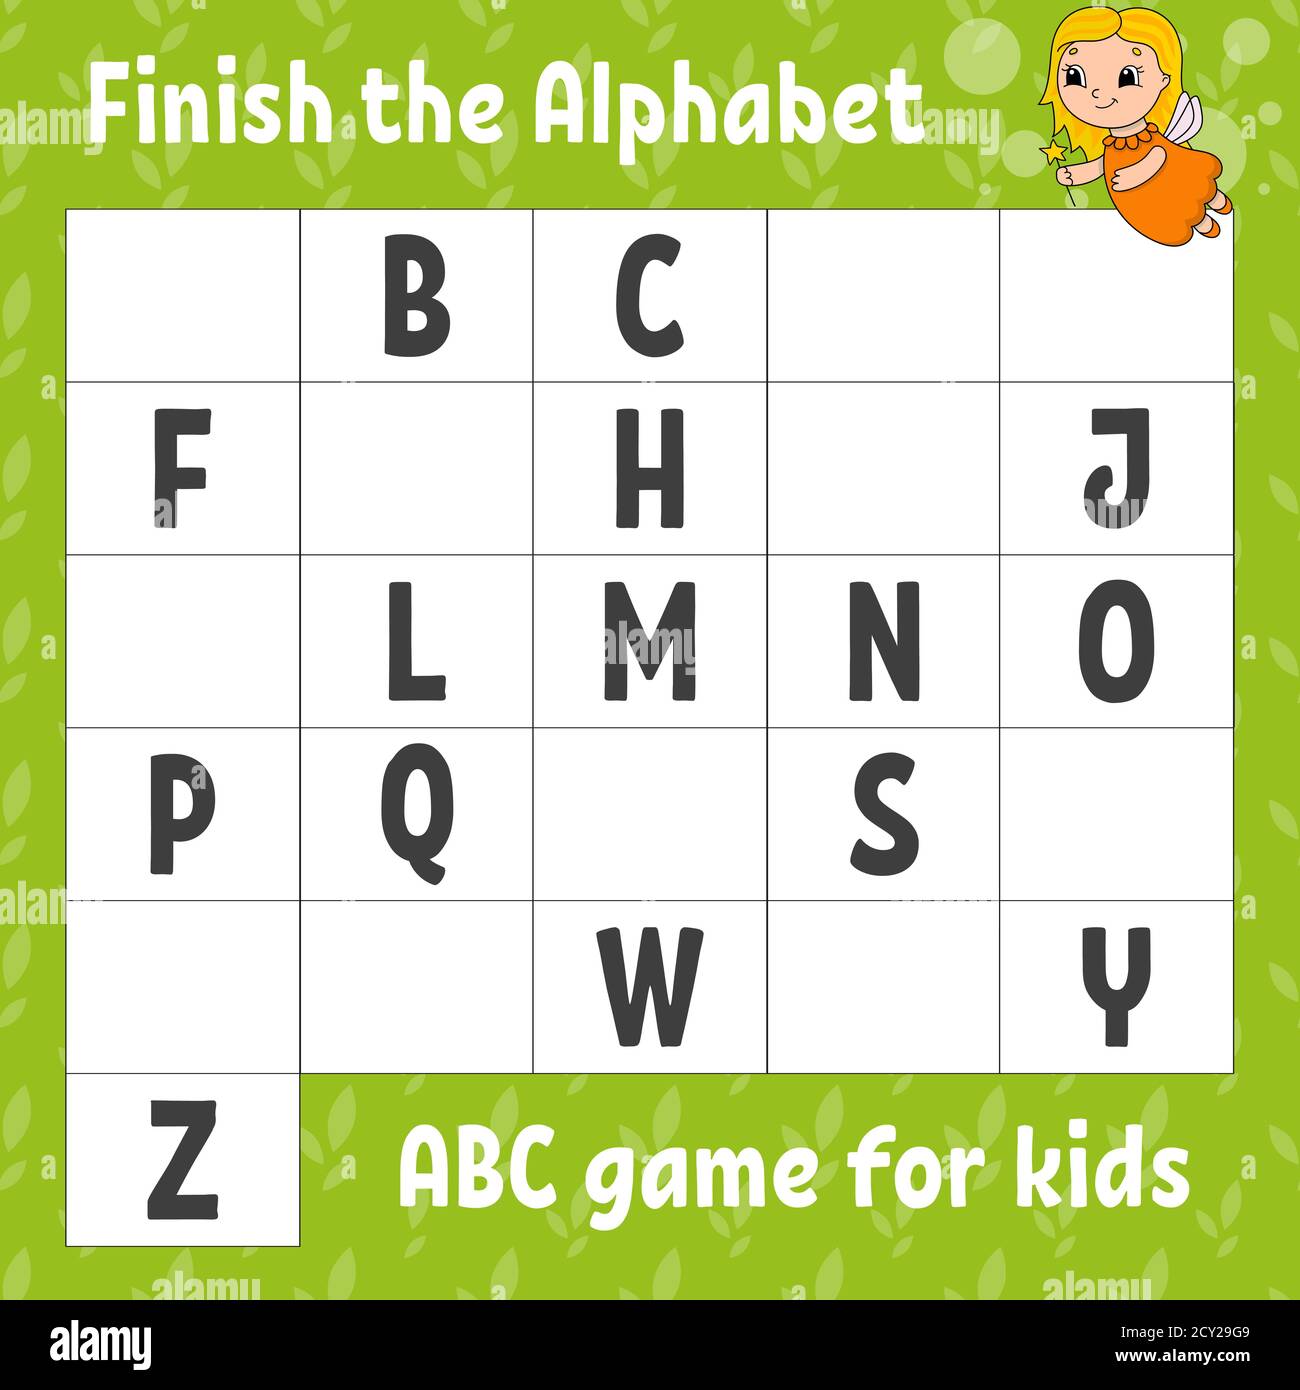 Das Alphabet fertig stellen. ABC-Spiel für Kinder. Arbeitsblatt zur Entwicklung von Schulungen. Lernspiel für Kinder. Aktivitätsseite Farbe. Stock Vektor